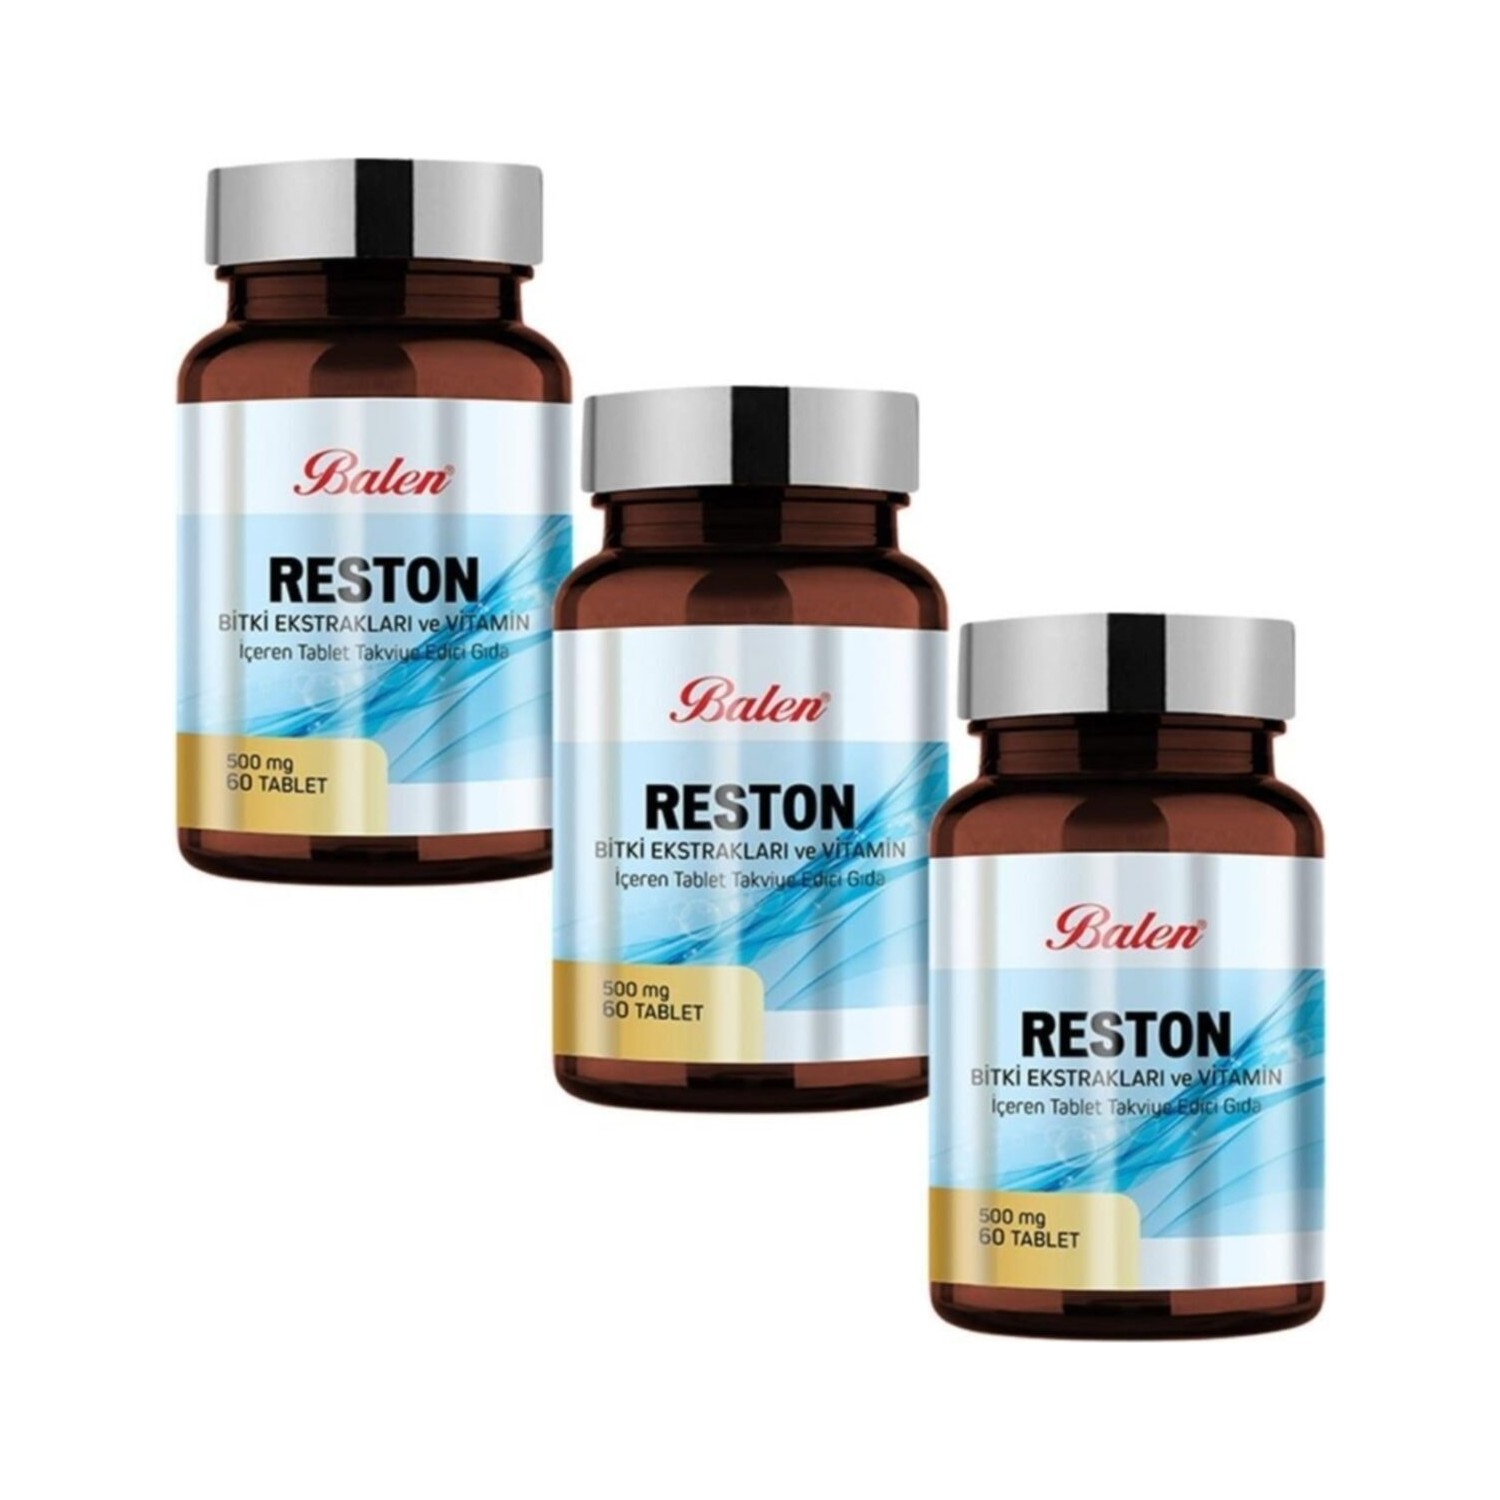 Пищевая добавка Balen Reston 500 мг, 3 упаковки по 60 капсул